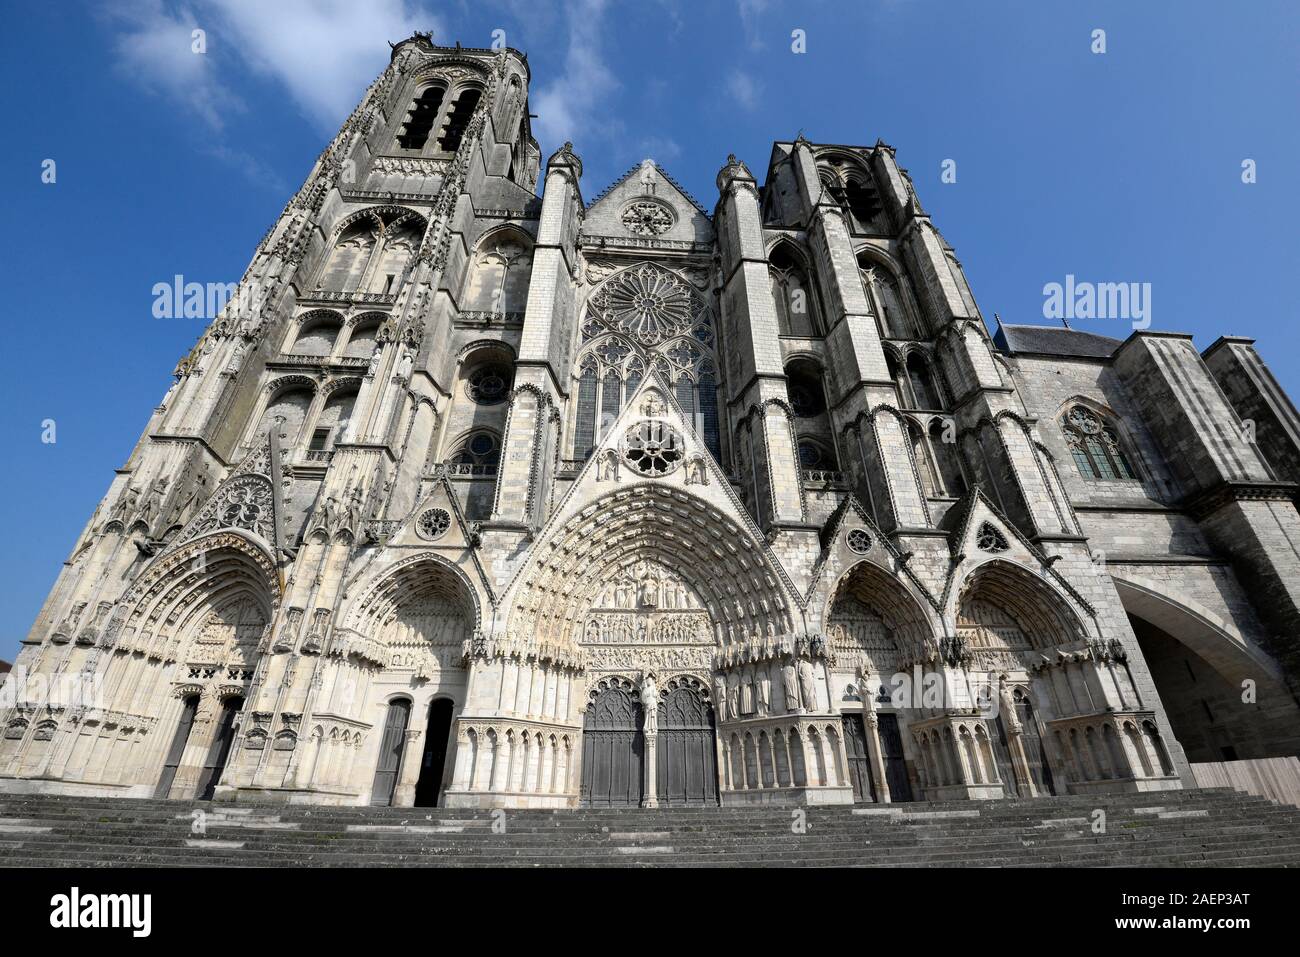 Bourges (Francia centrale): la cattedrale di Bourges cattedrale gotica, registrato come sito Patrimonio Mondiale dell'UNESCO. La facciata ovest della cattedrale Foto Stock